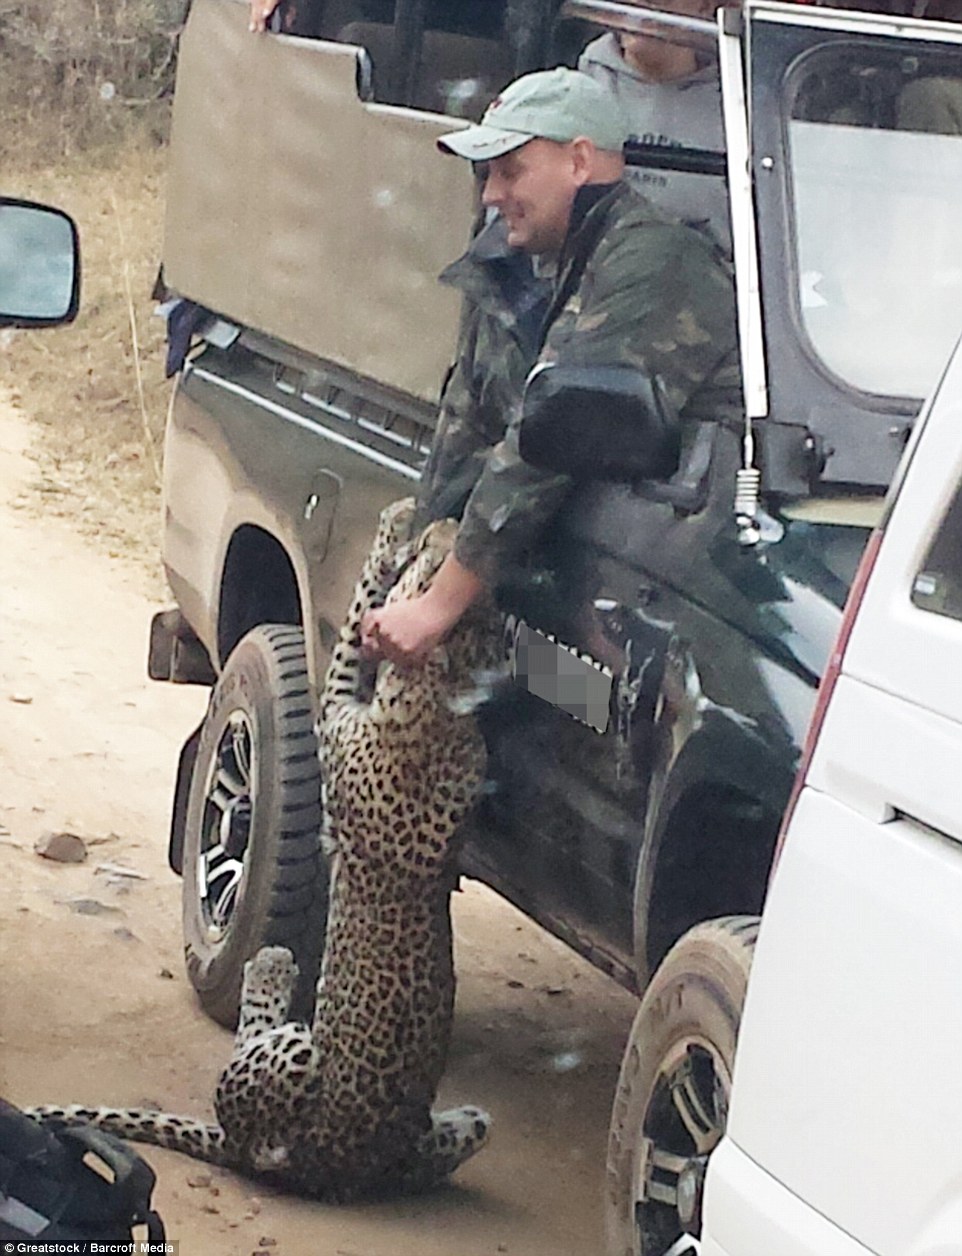 Hihetetlen pillanat a szafarin - táskával próbálták megfékezni a leopárdot - videó